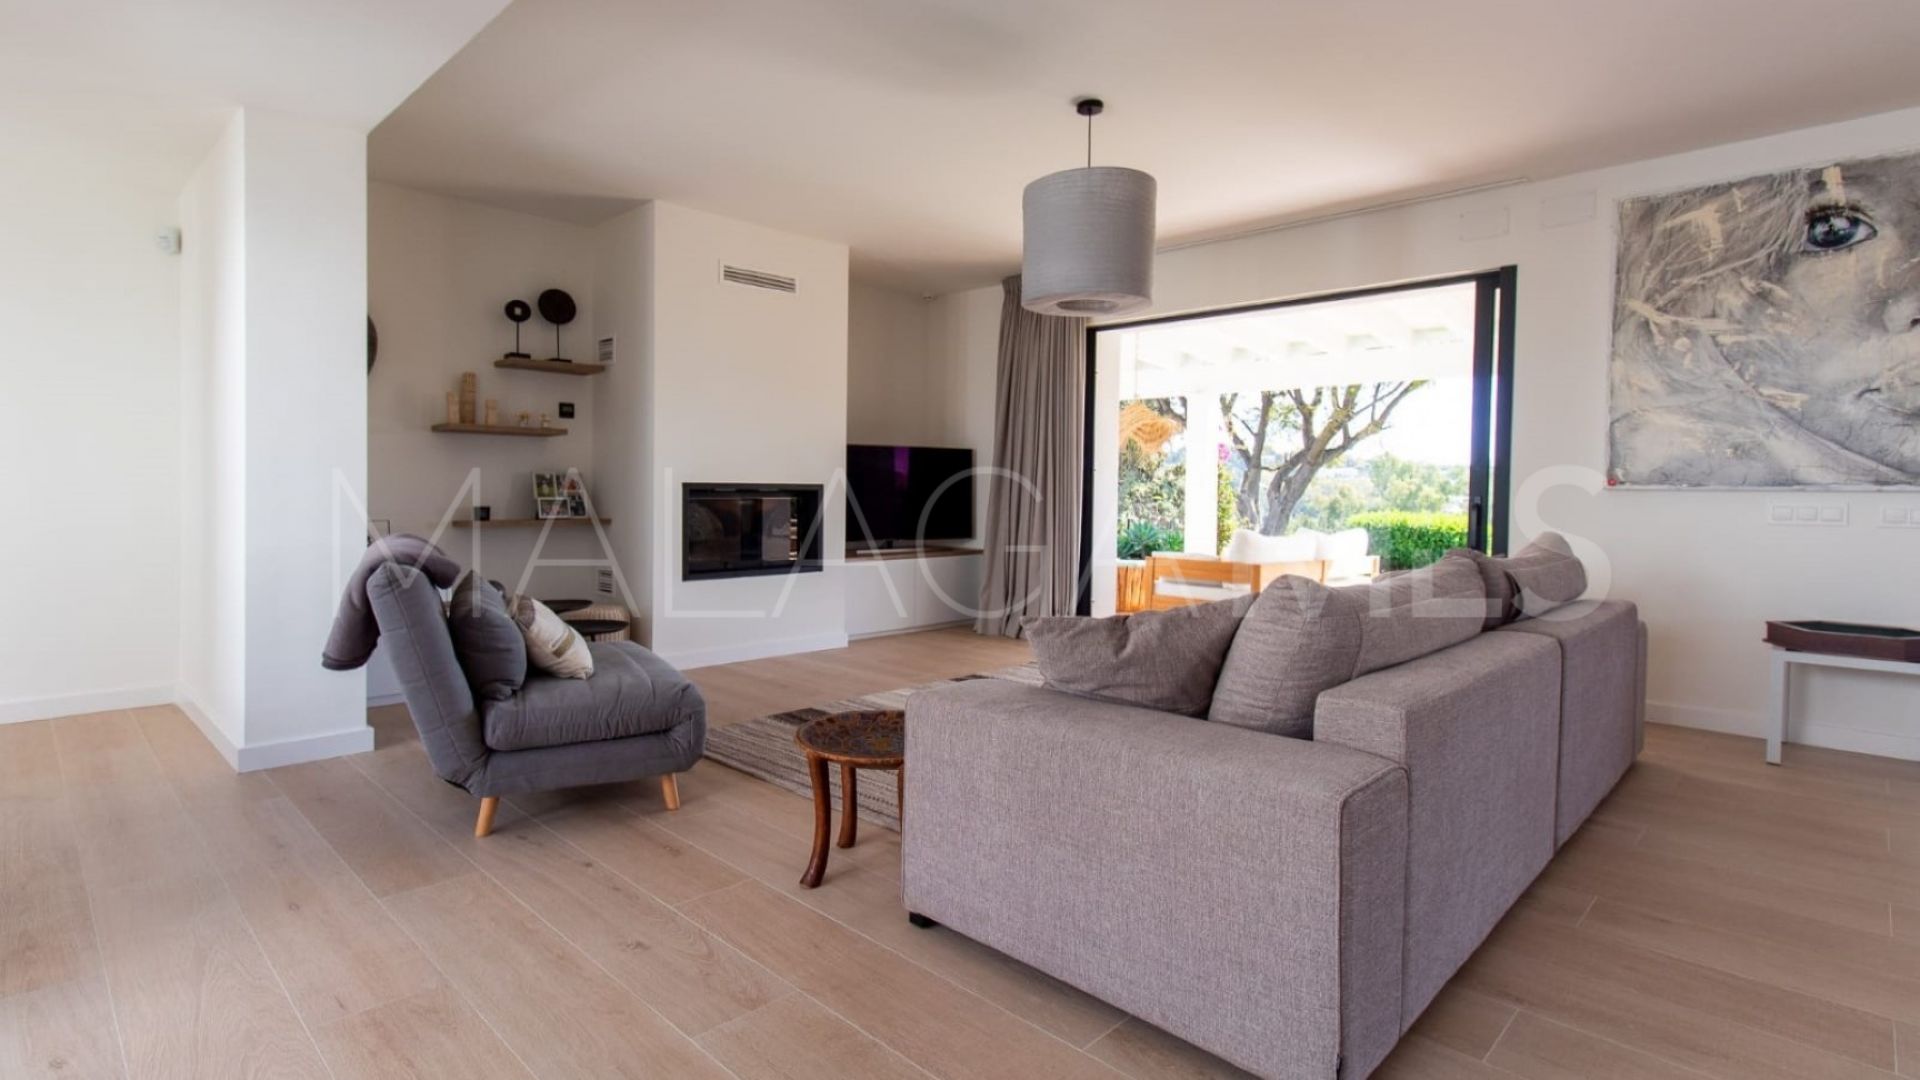 Villa for sale in Altos del Paraiso with 4 bedrooms